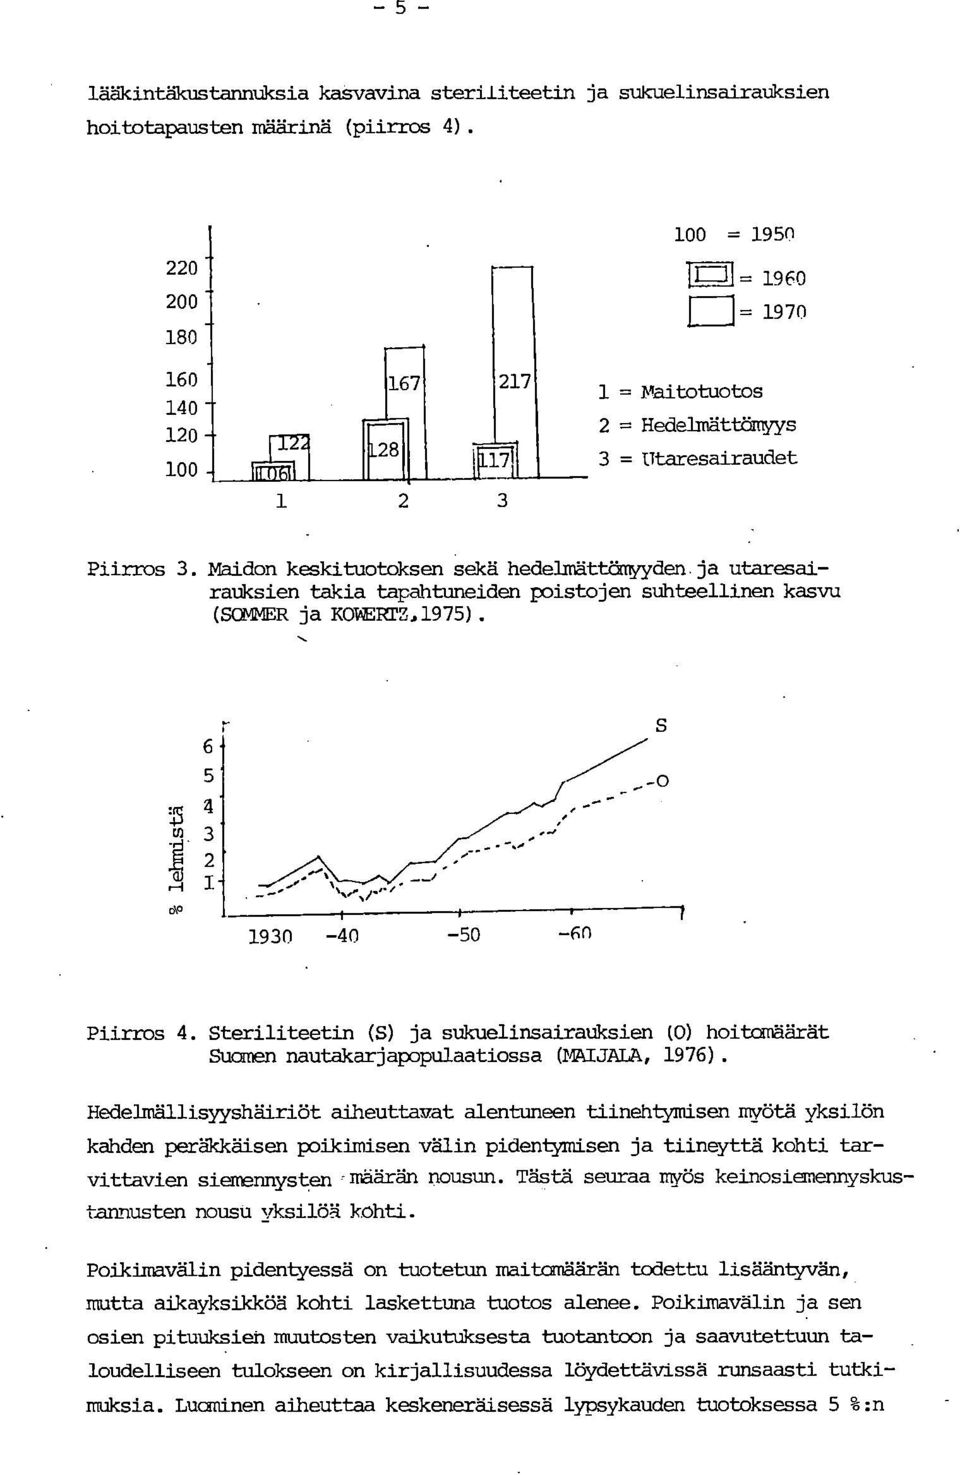 ja utaresairatiksien takia tapahtuneiden poistojen suhteellinen kasvu (SOMMER ja KOTERTZ,1975). Piirros 4.